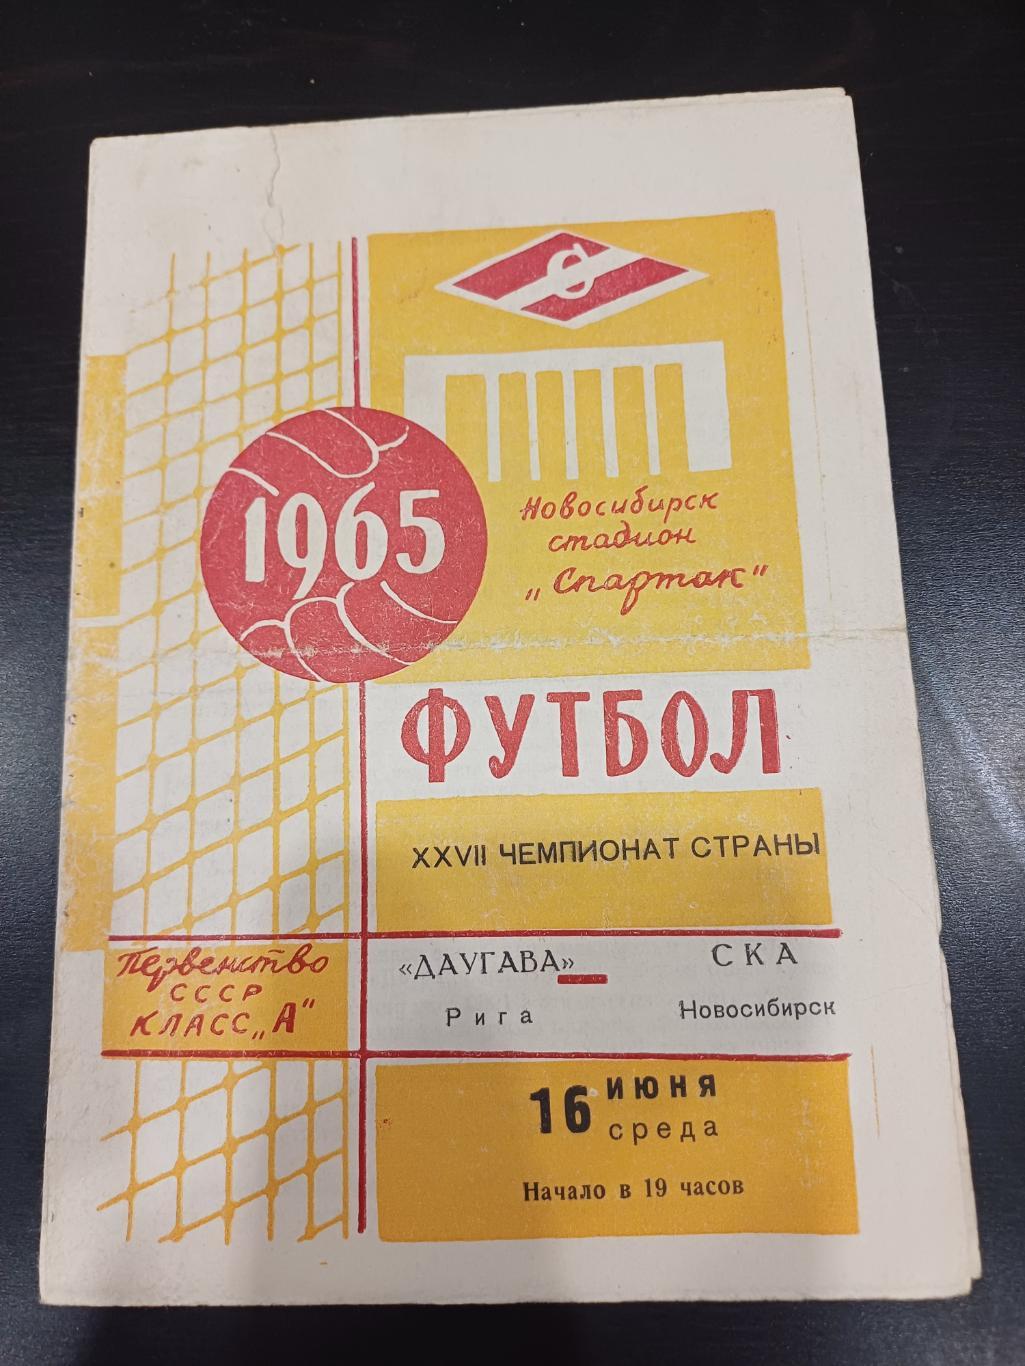 Ска (Новосибирск) - Даугава 1965